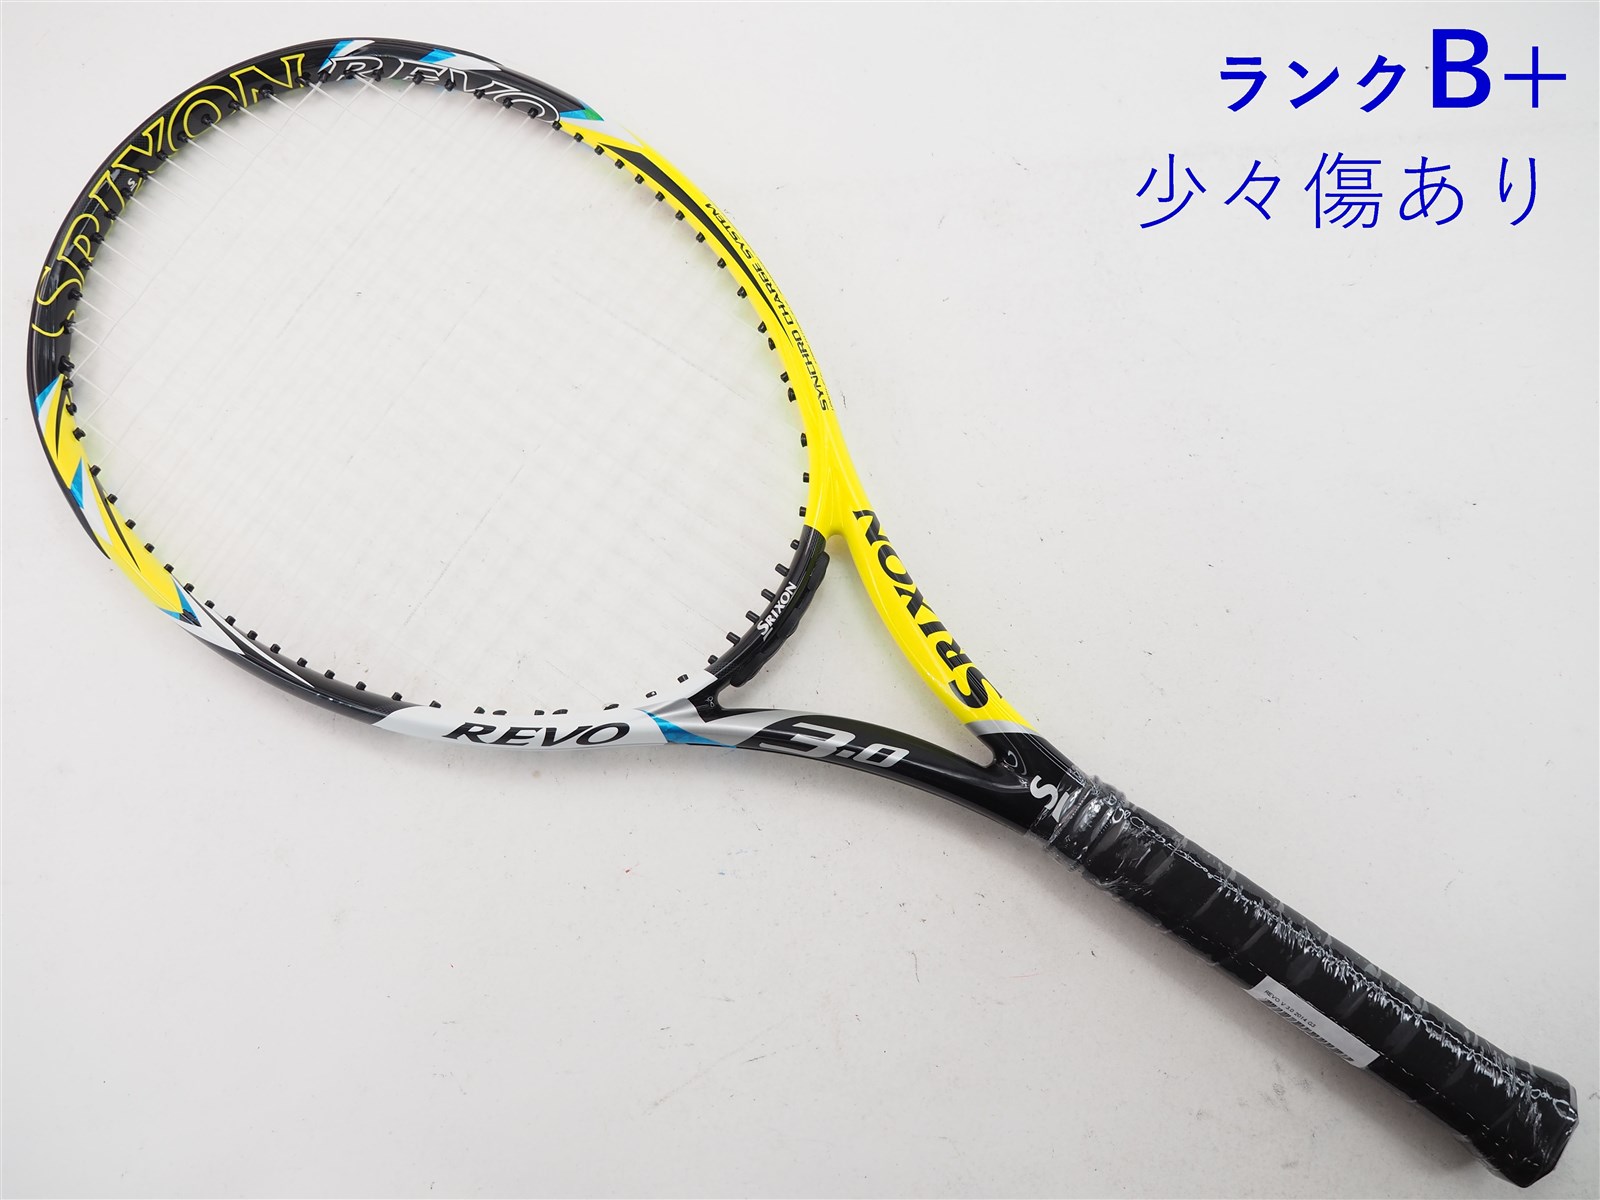 【中古】スリクソン レヴォ ブイ 3.0 2014年モデルSRIXON REVO V 3.0 2014(G3)【中古 テニスラケット】【送料無料】